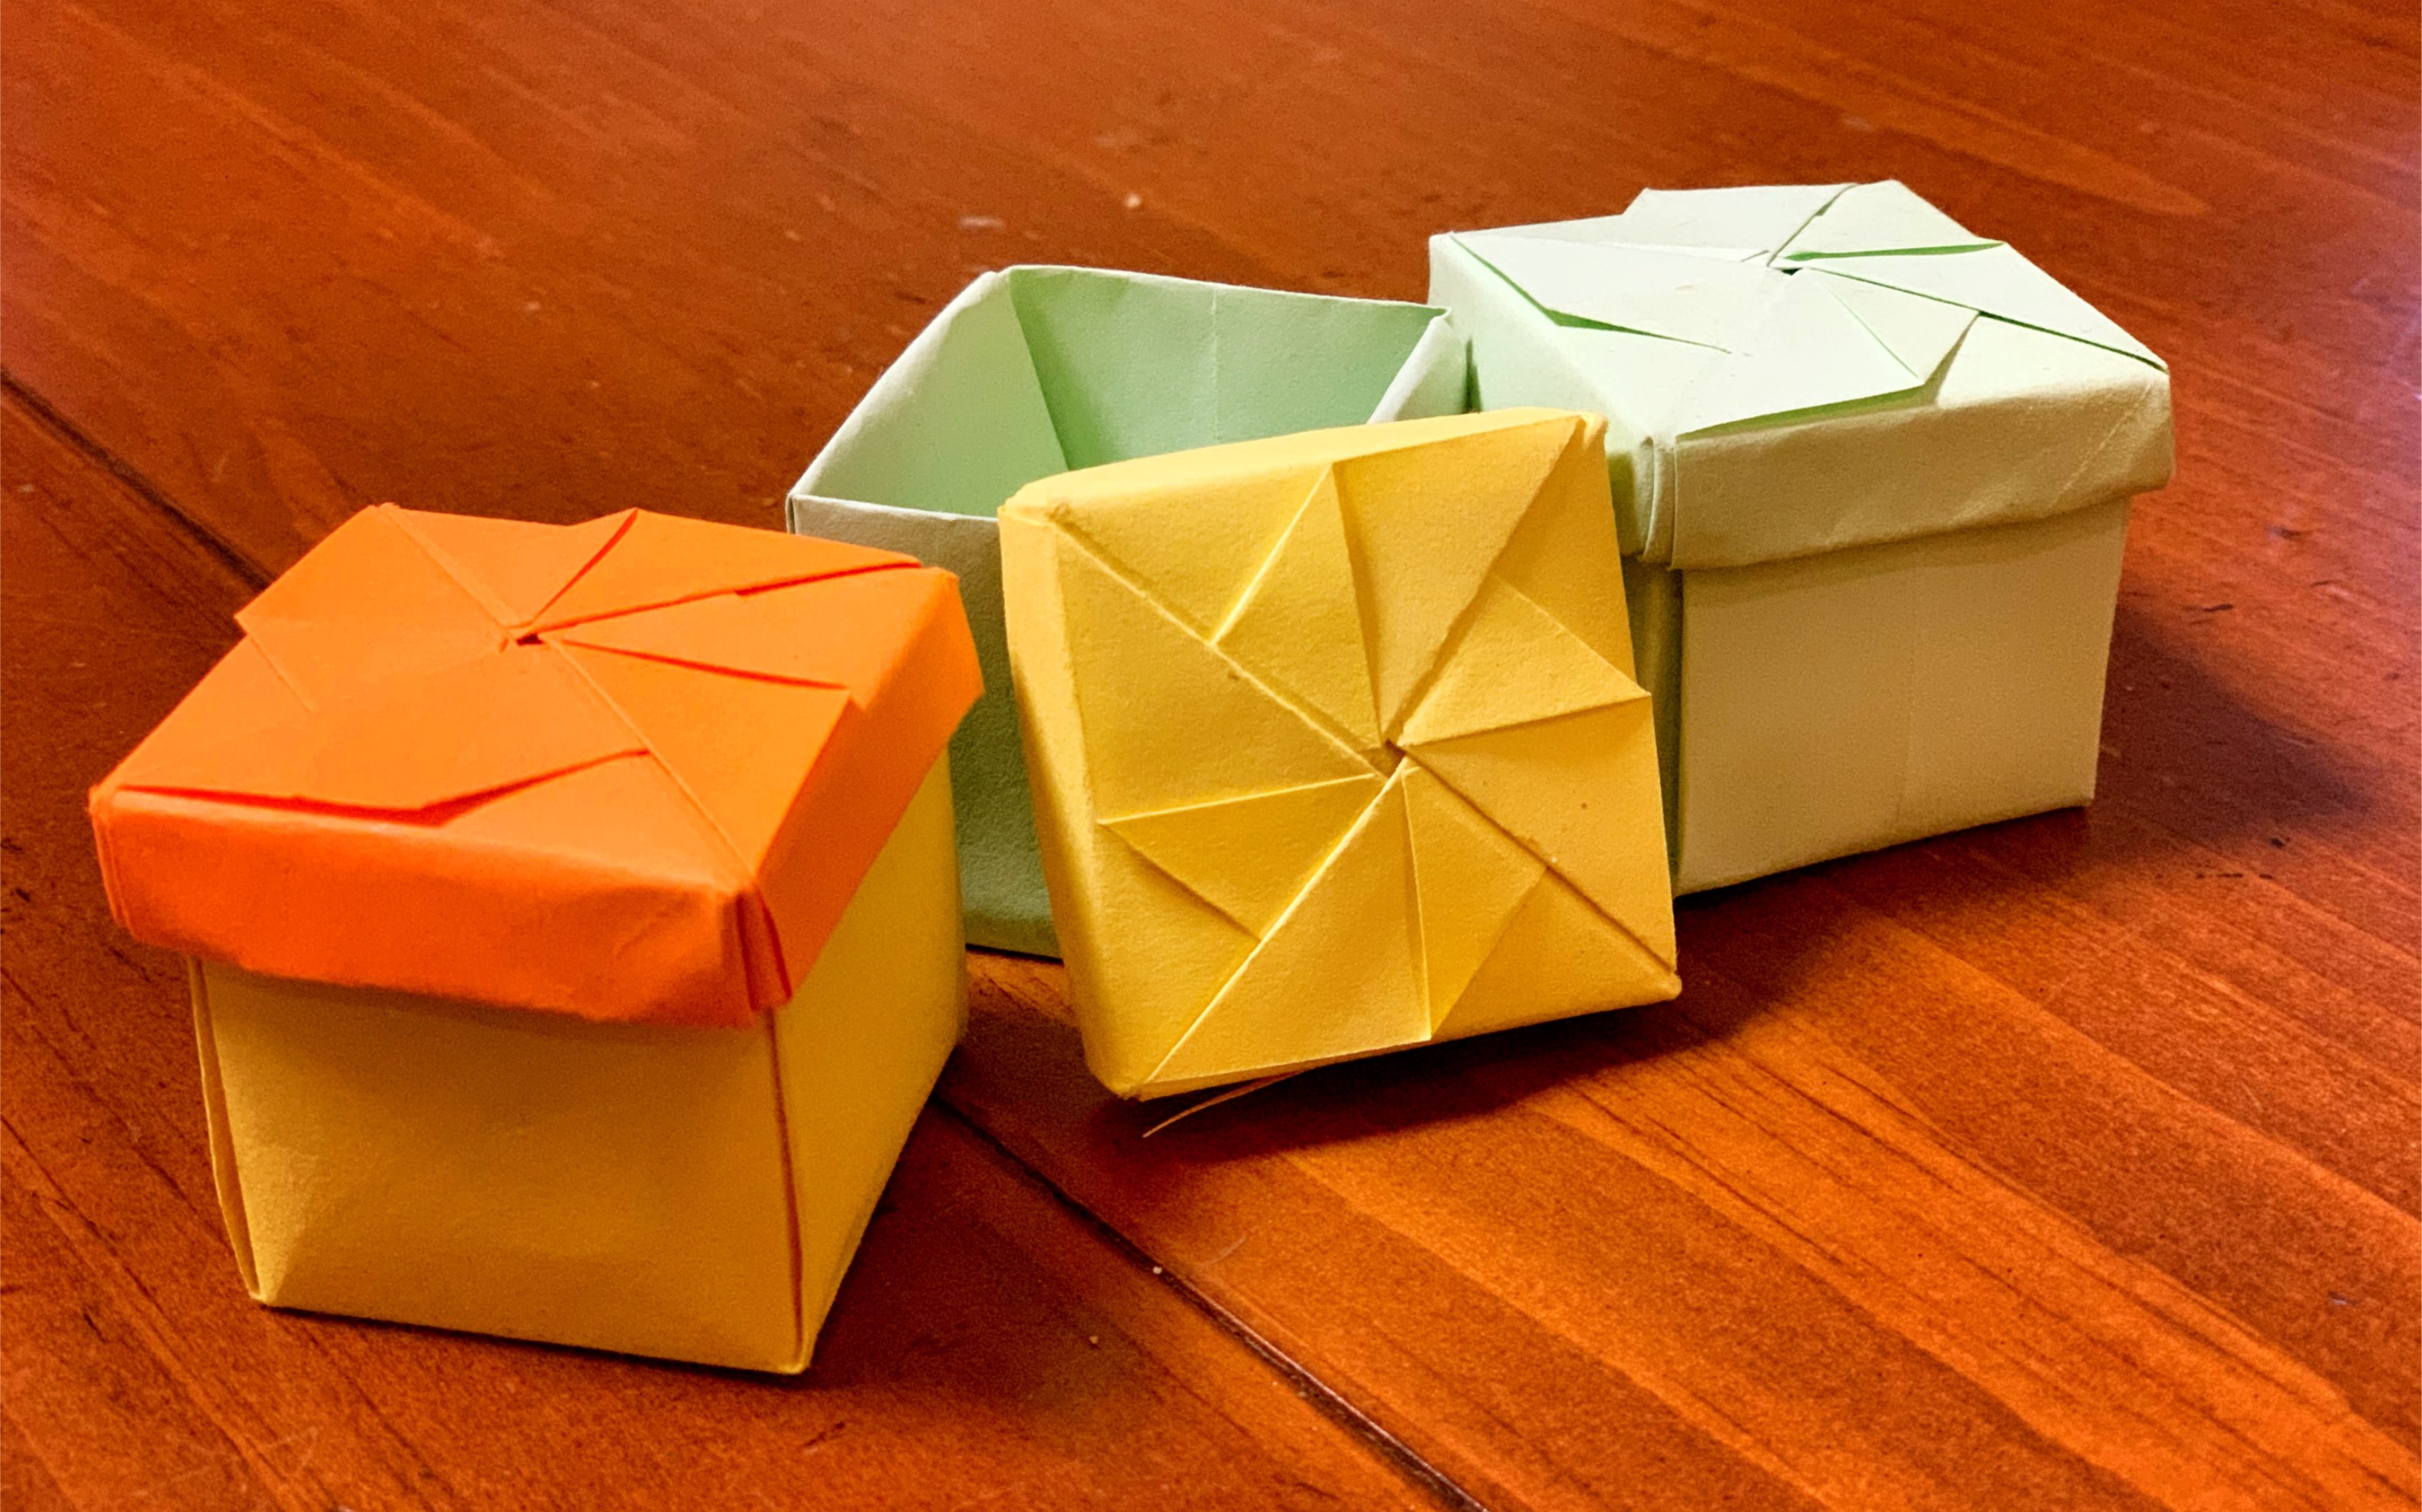 折纸小盒子带盖子图片